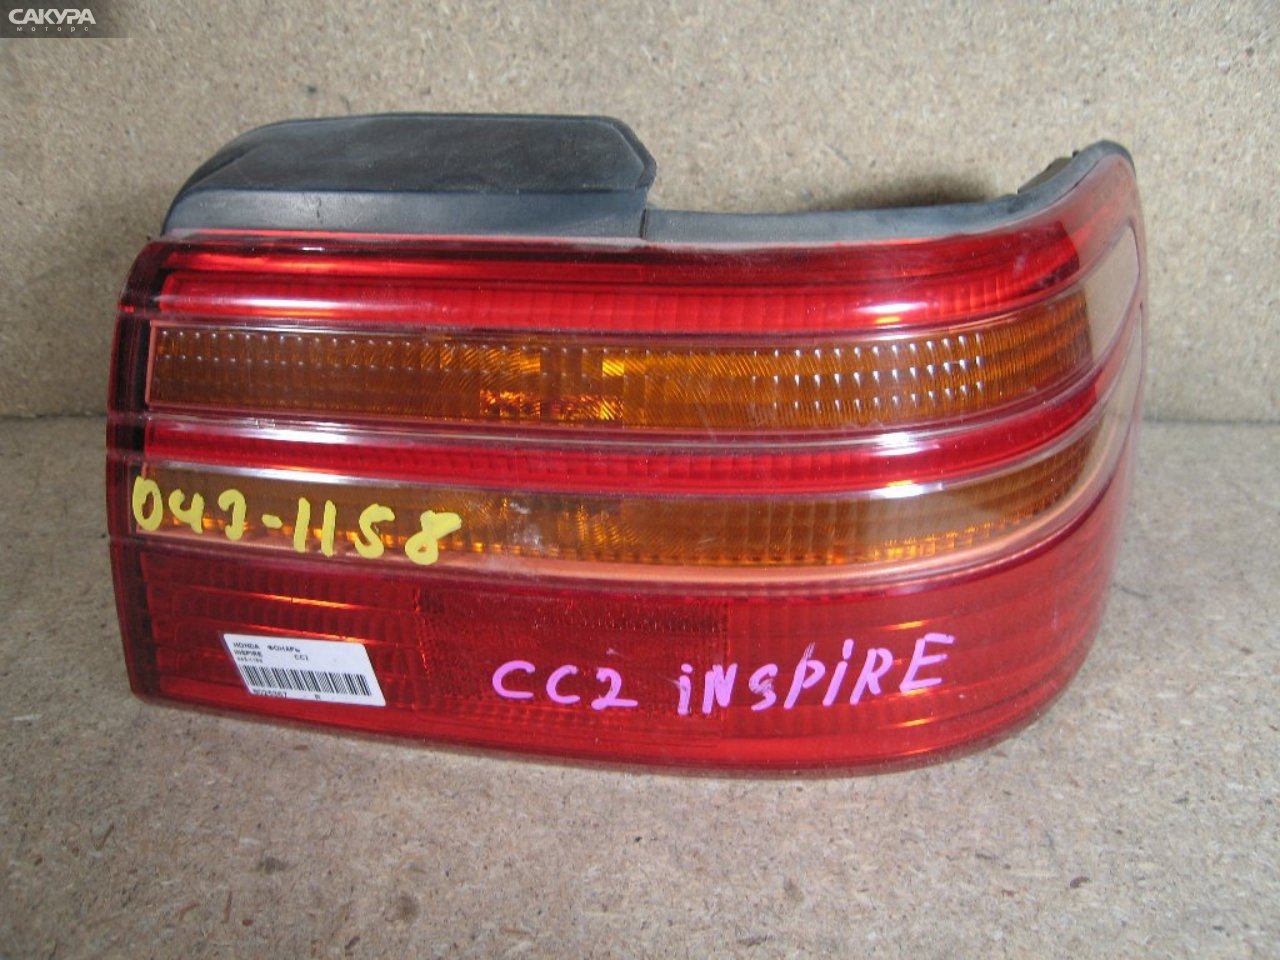 Фонарь стоп-сигнала правый Honda Inspire CC2 043-1158: купить в Сакура Абакан.